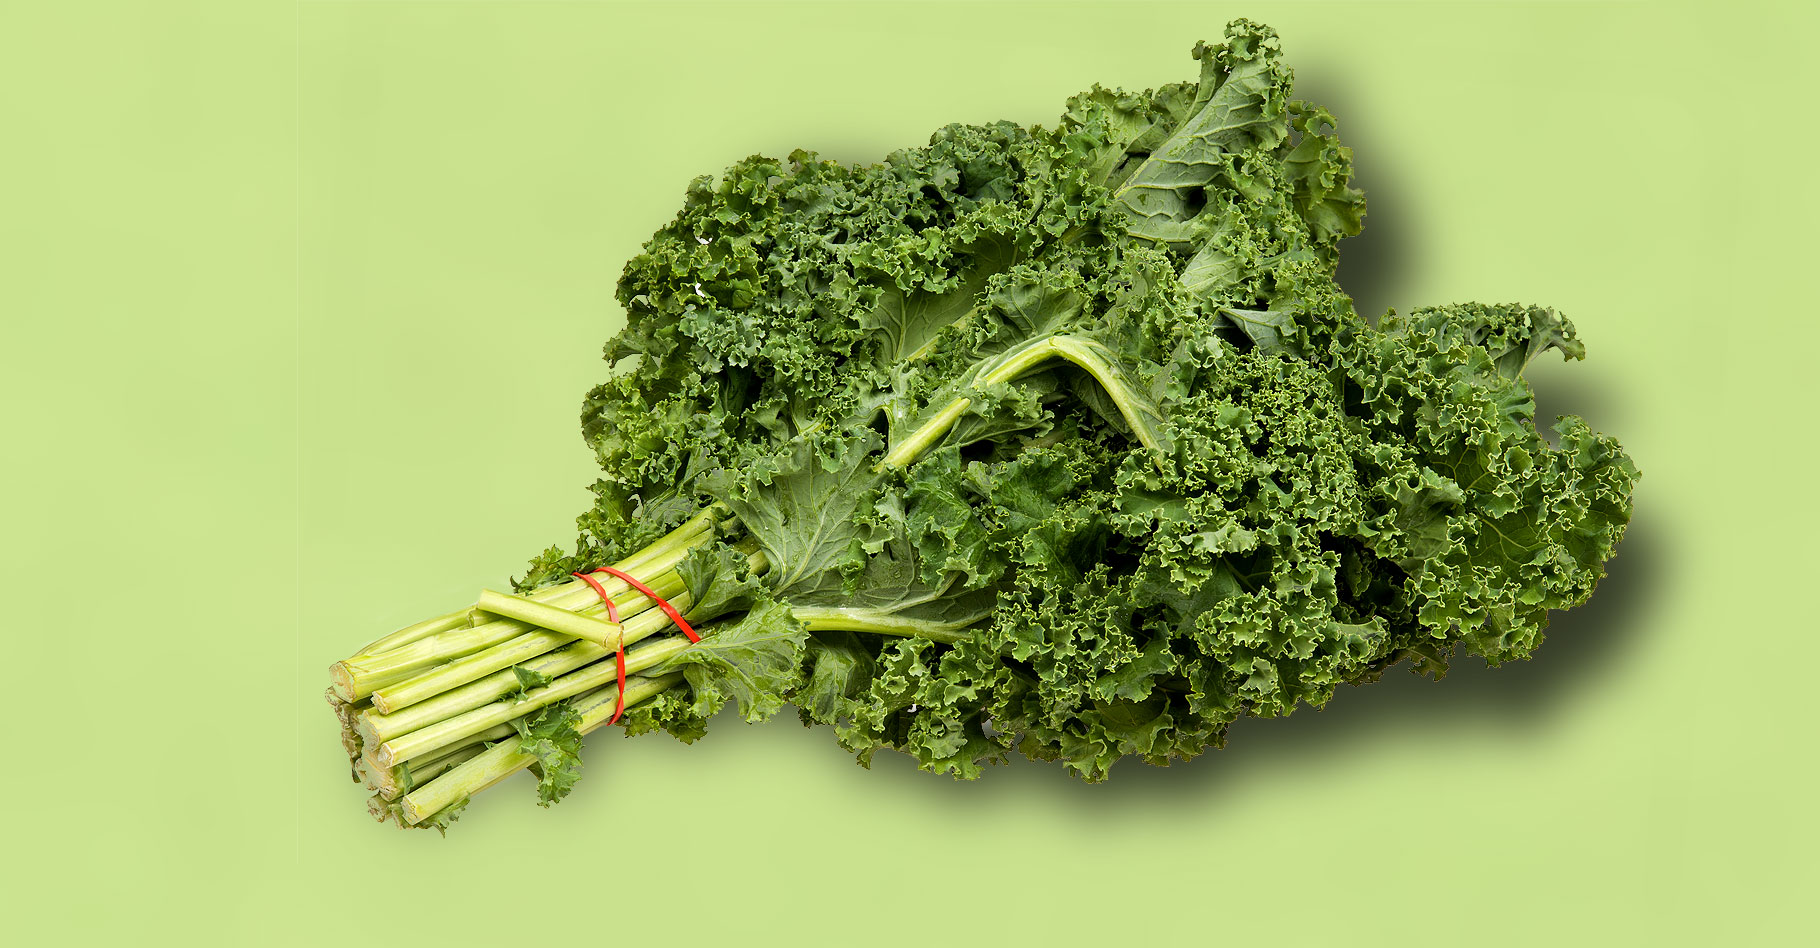 Le chou kale aux apports nutritifs impressionnants.&nbsp;© Evan-Amos,&nbsp;Wikimedia commons, Domaine Public